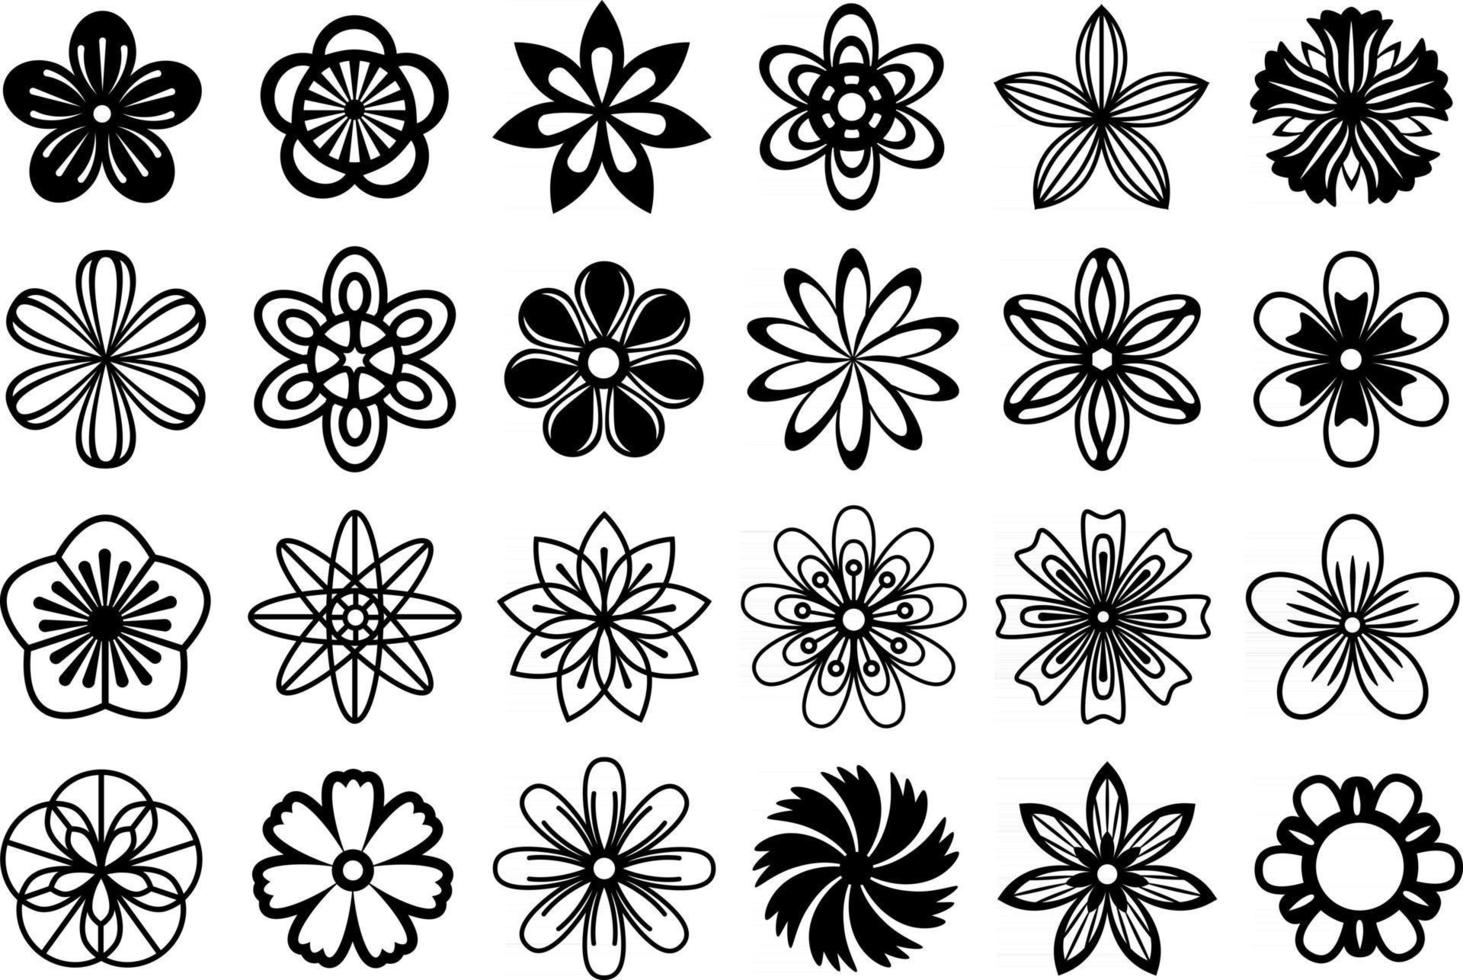 vector bloemenreeks. verzameling zwarte platte bloemenillustraties. abstracte stylizet uitgesneden bloemen. comfortabel voor knippen en silhouethandwerk